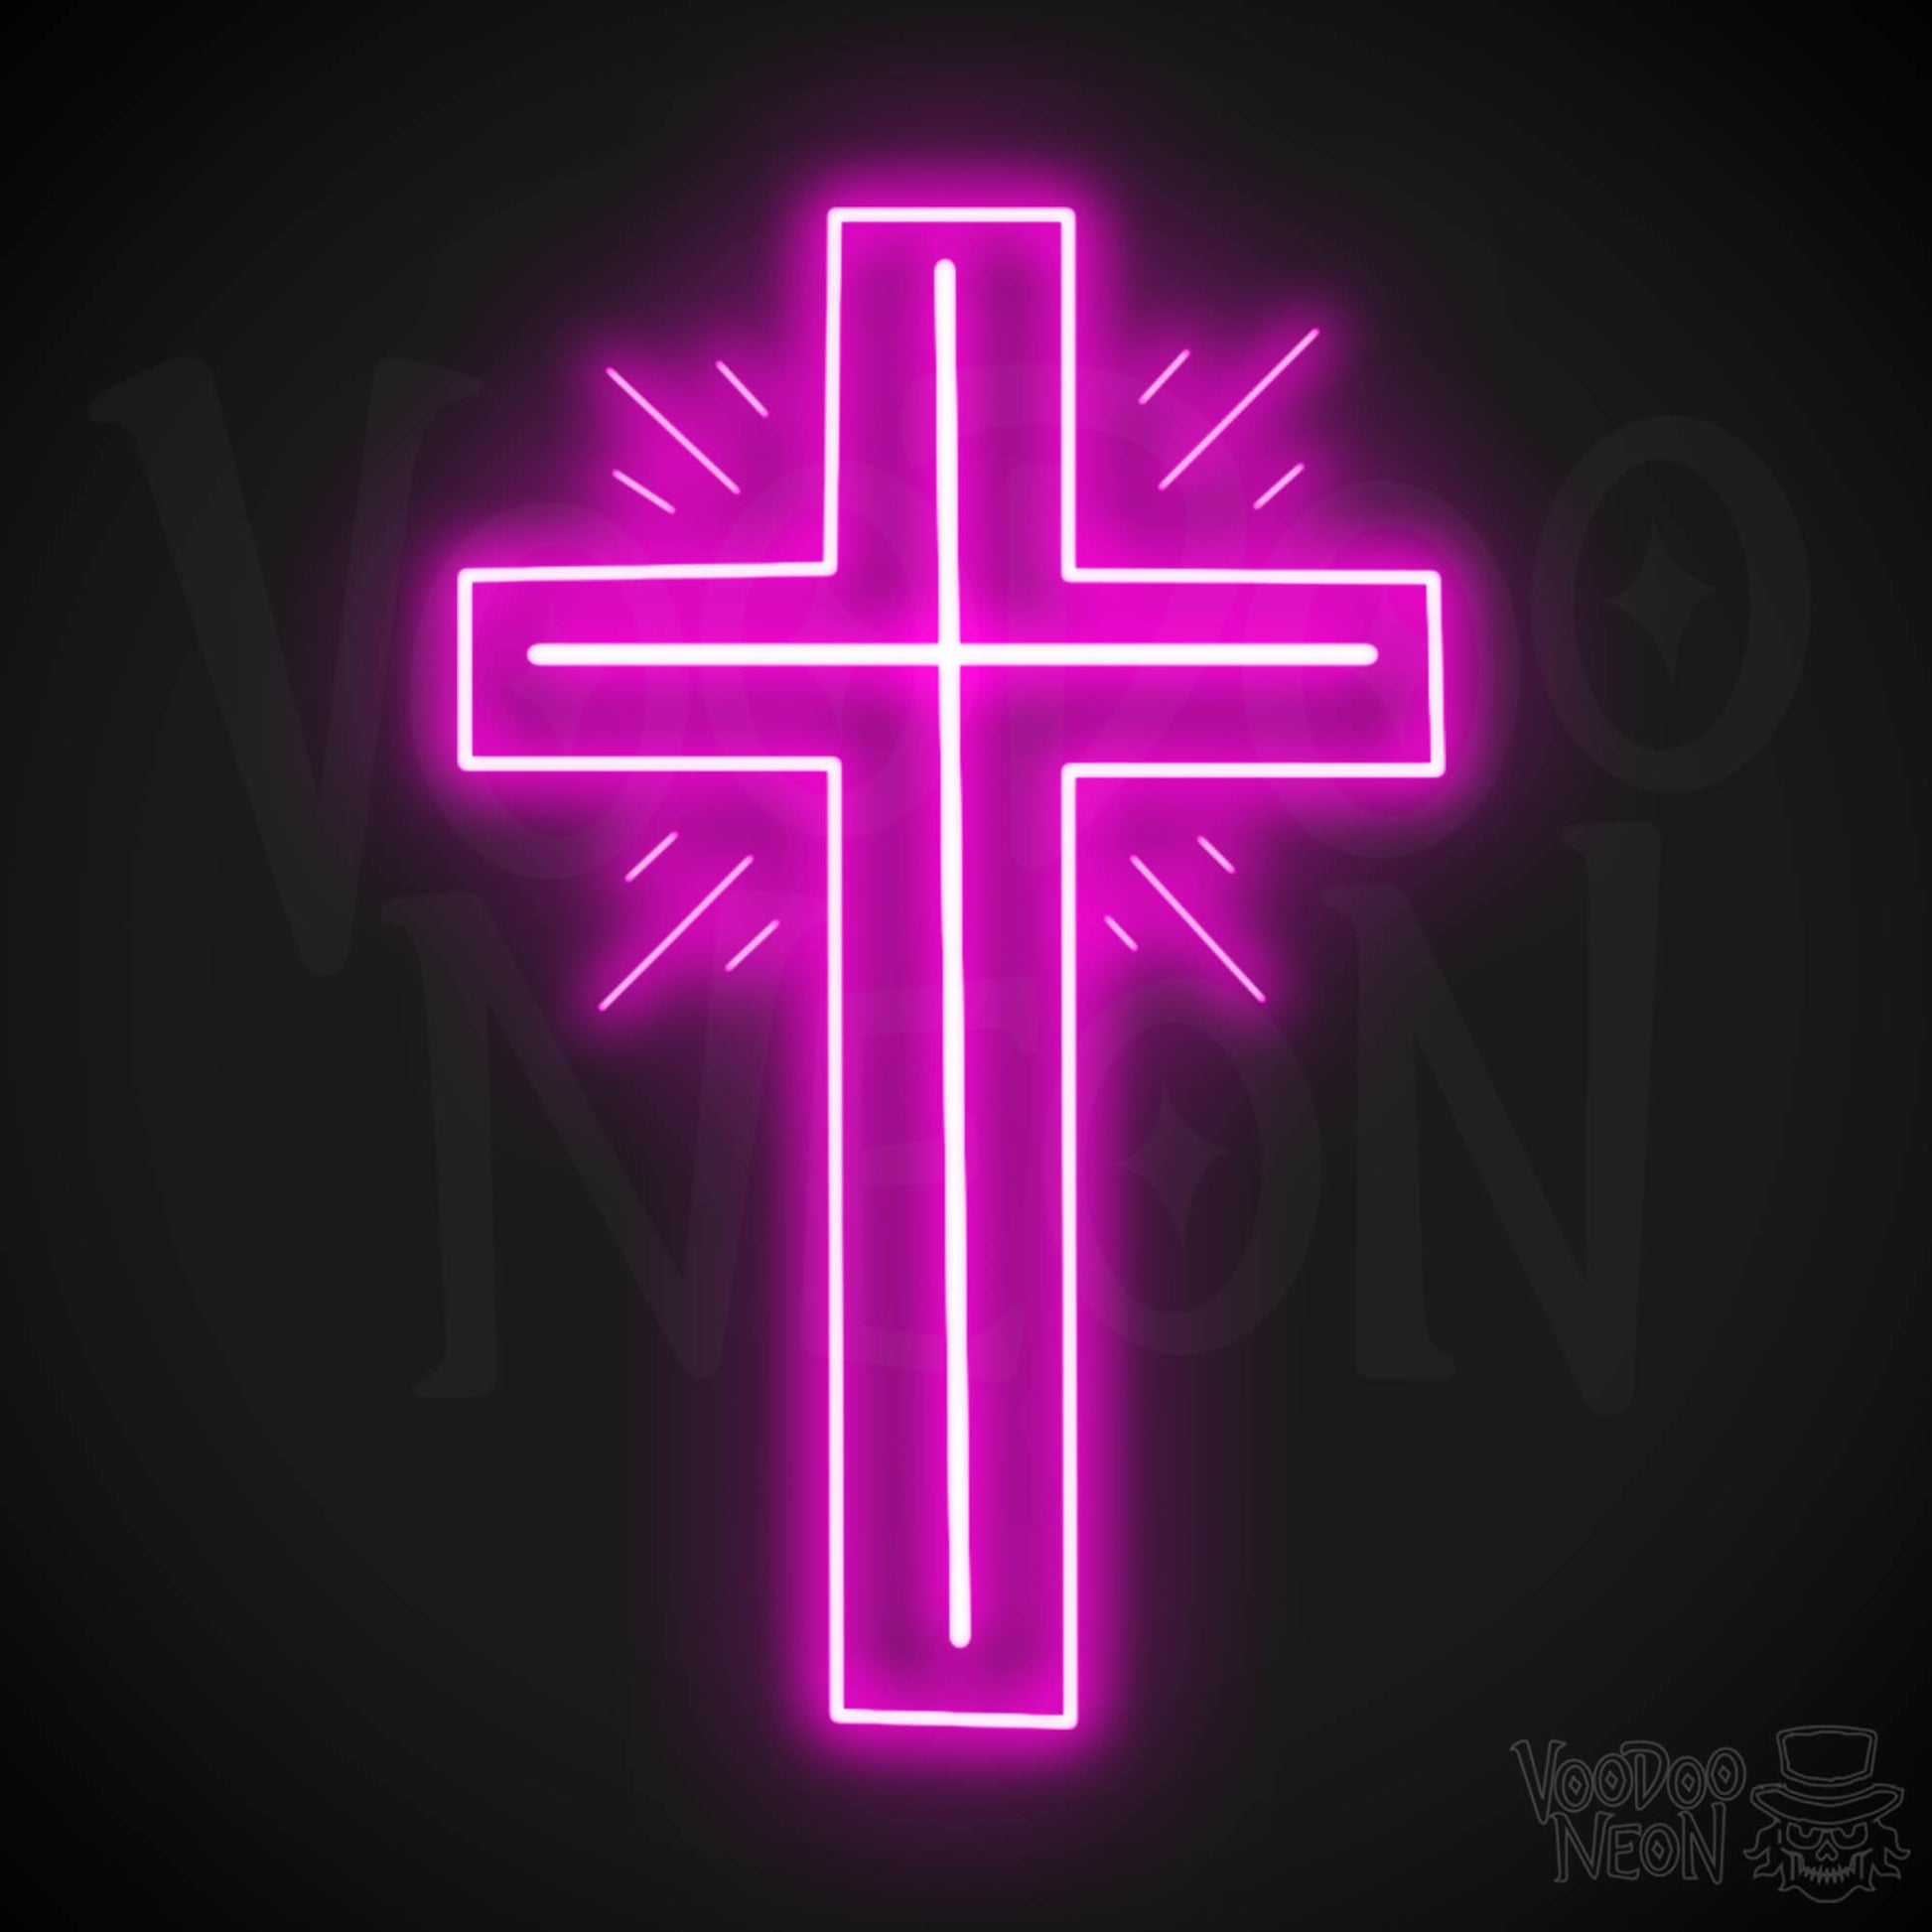 Neon Cross Sign - Neon Cross Wall Art - Cross Neon Sign - Color Pink